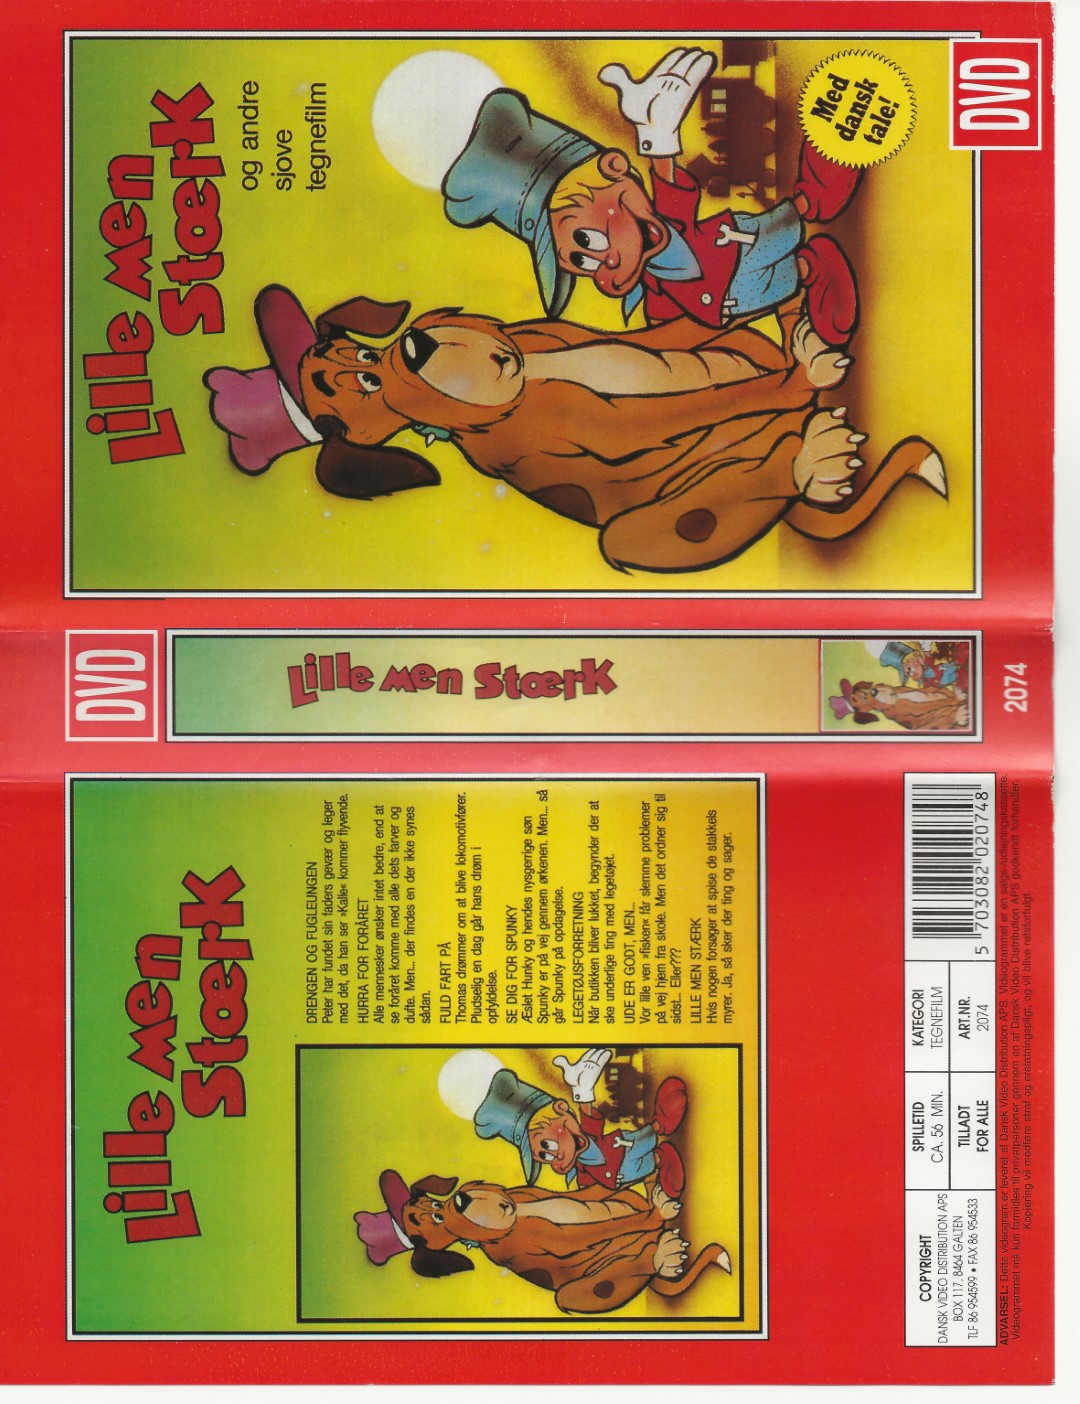 Lille men stærk - og andre sjove tegnefilm  VHS DVD - Dansk Video Distribution A/S 0